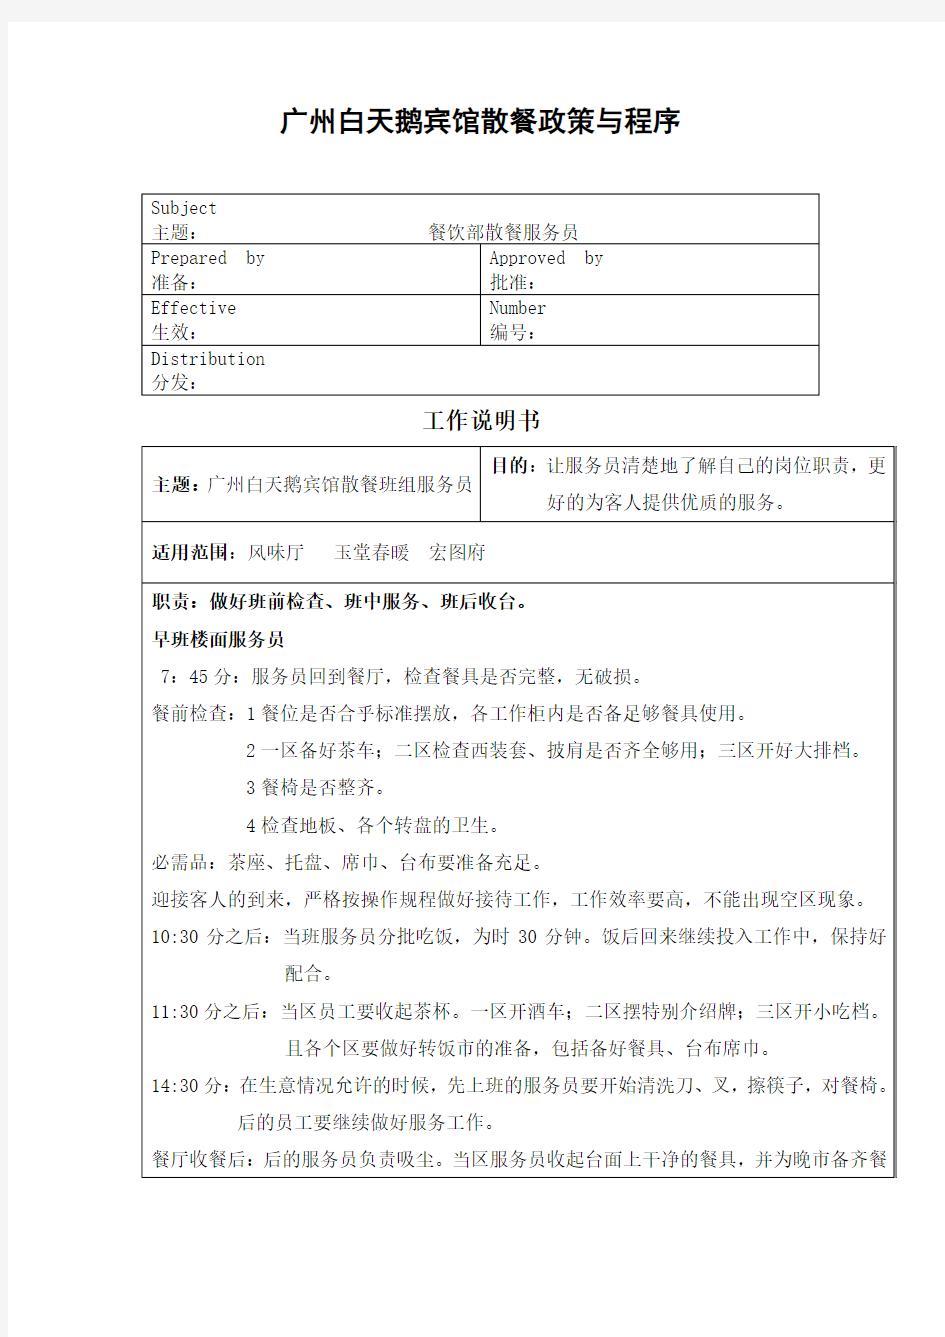 广州白天鹅宾馆散餐政策与程序,服务流程